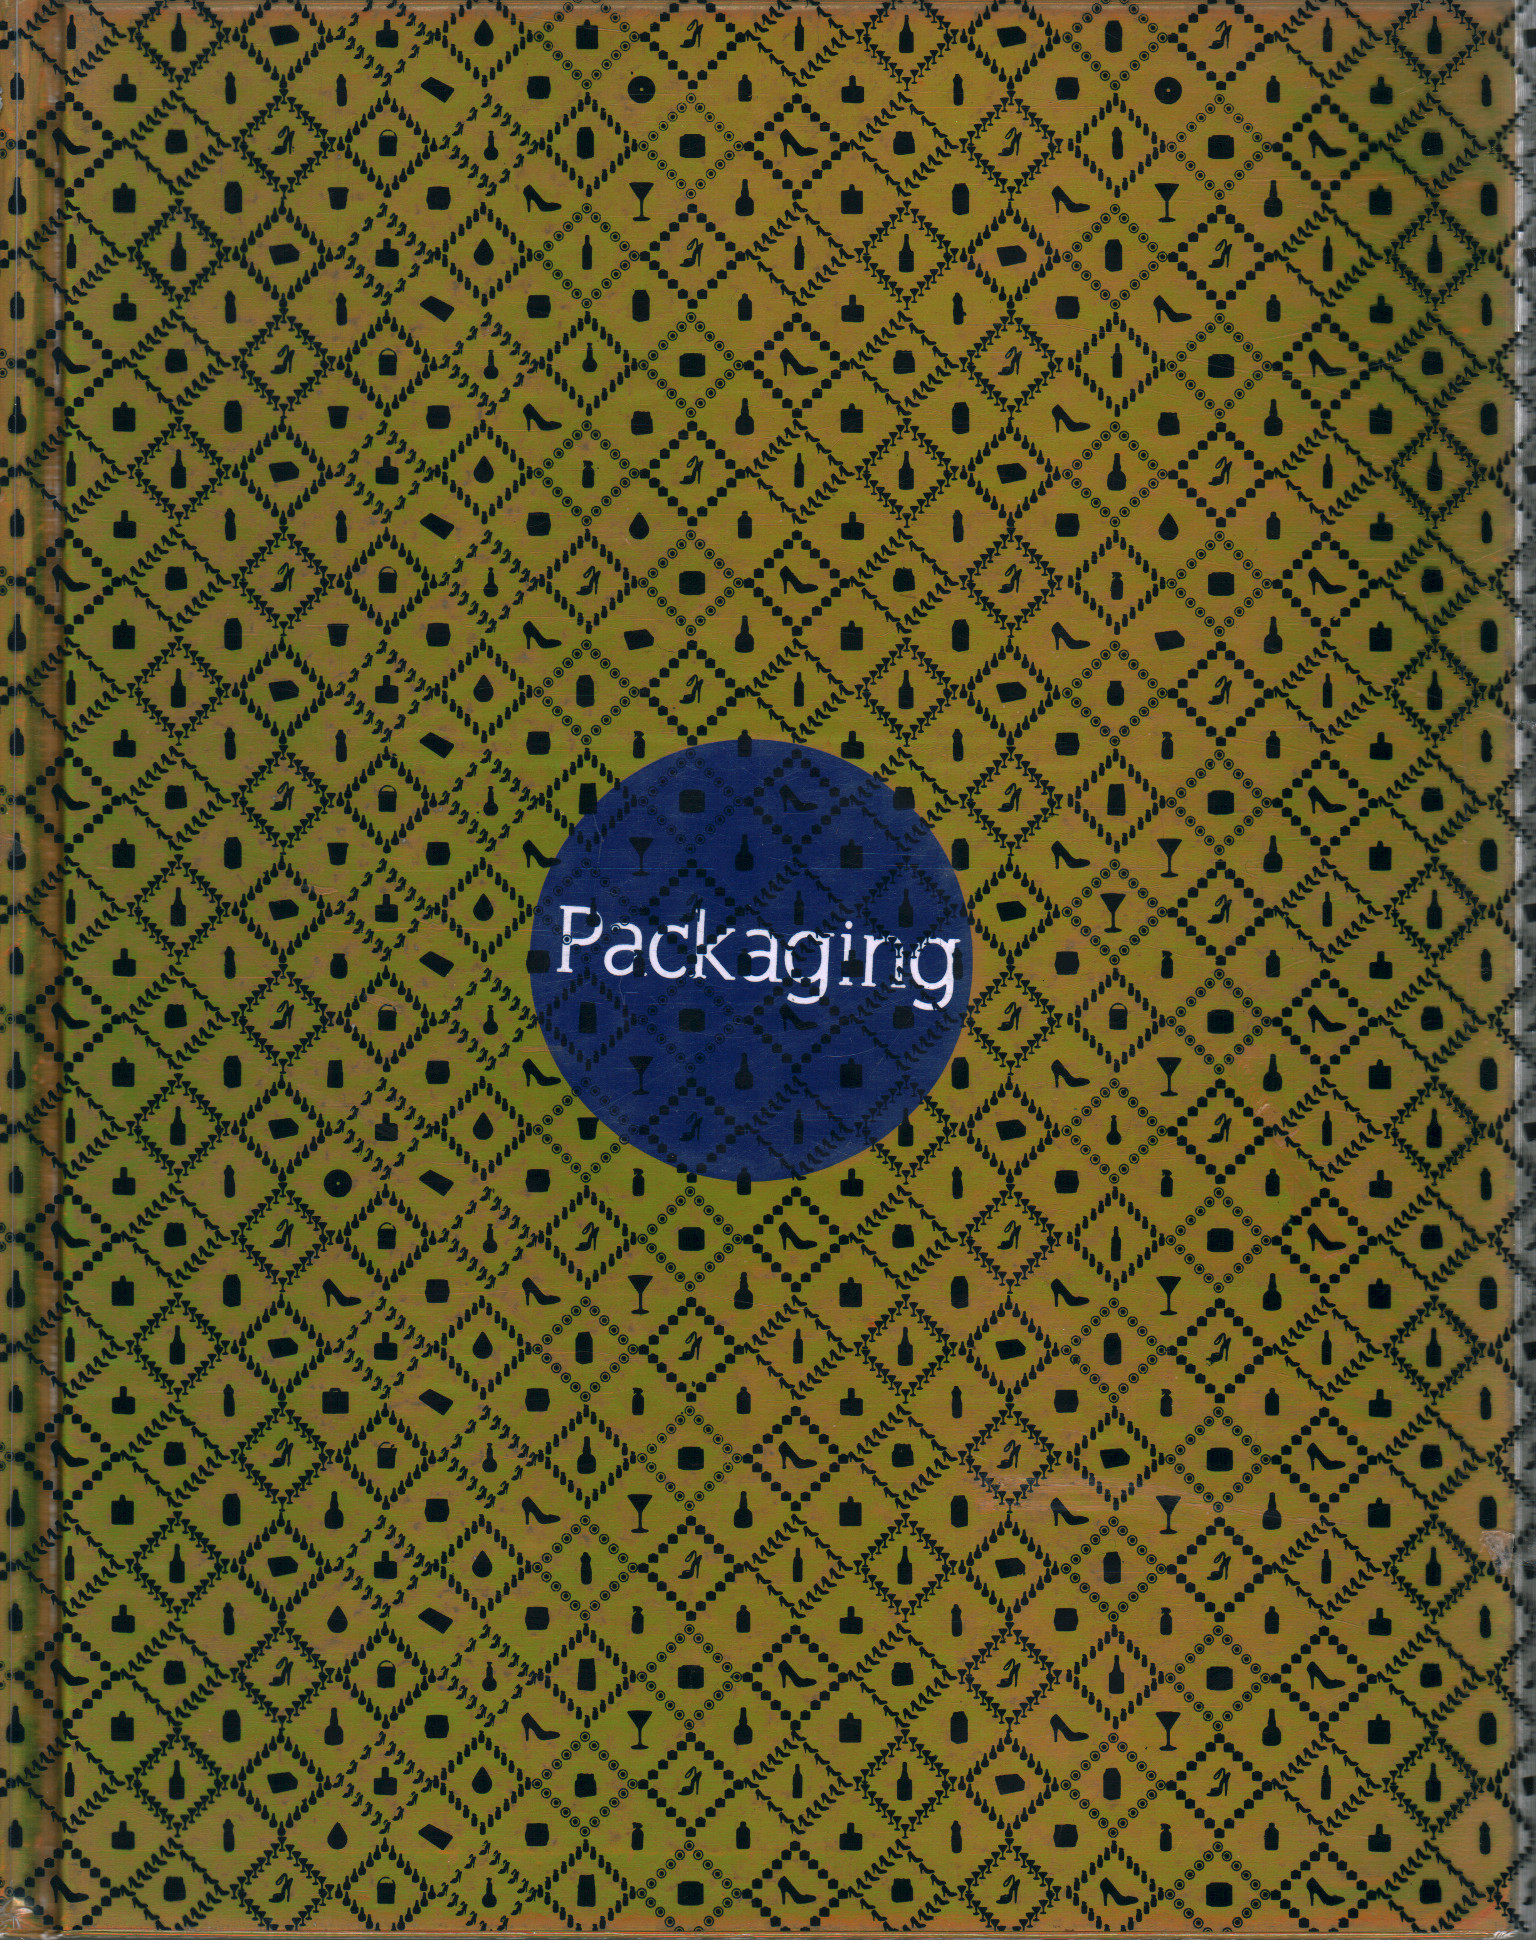 Packaging, AA.VV.